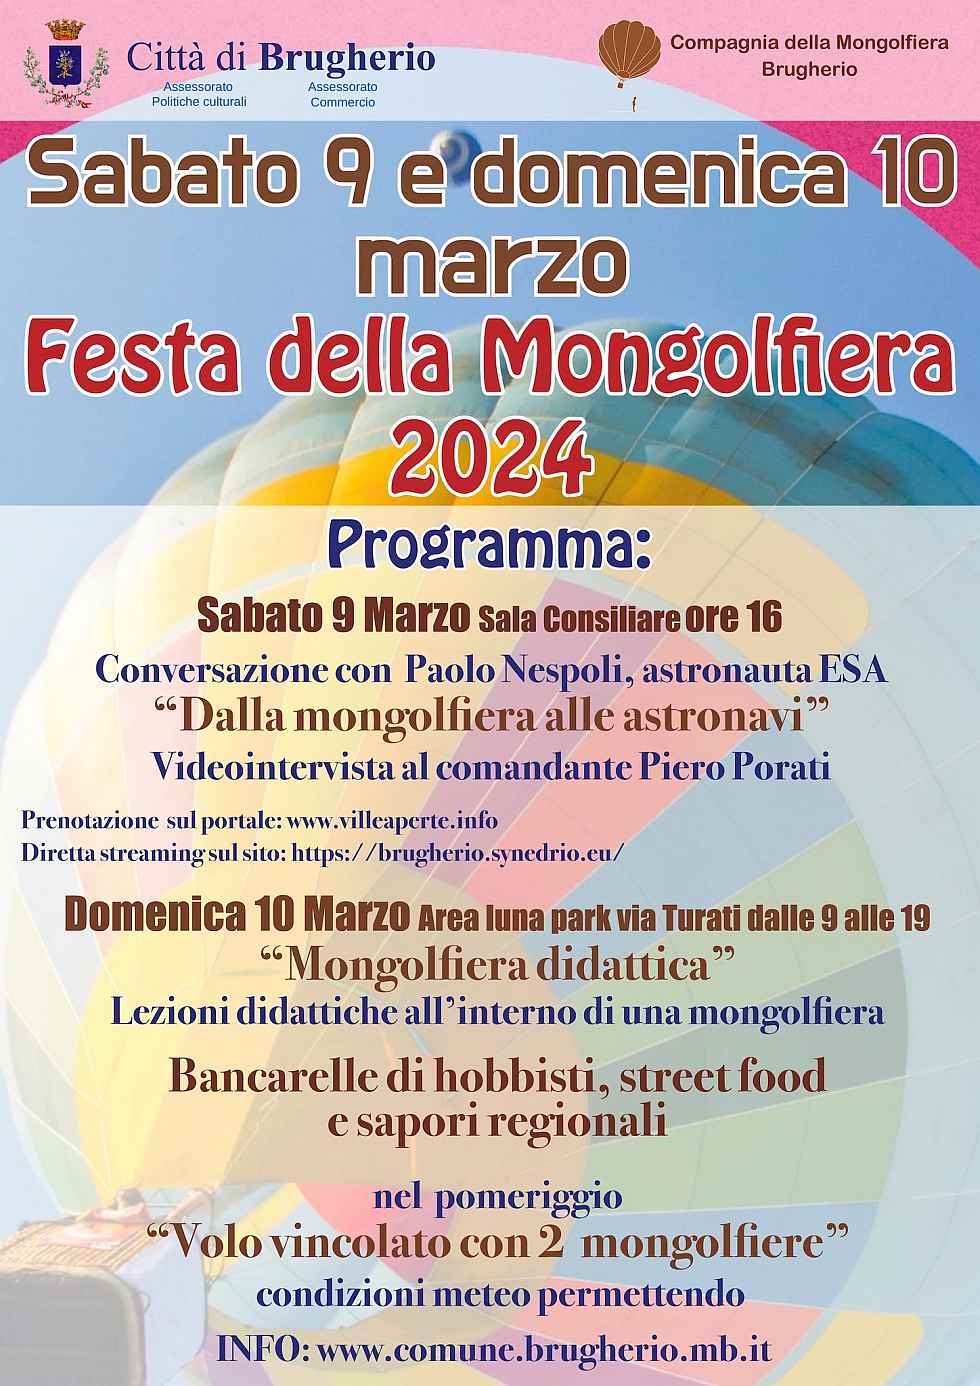 Brugherio (MB)
"Festa Siciliana"
dal 10 al 13 Marzo 2022